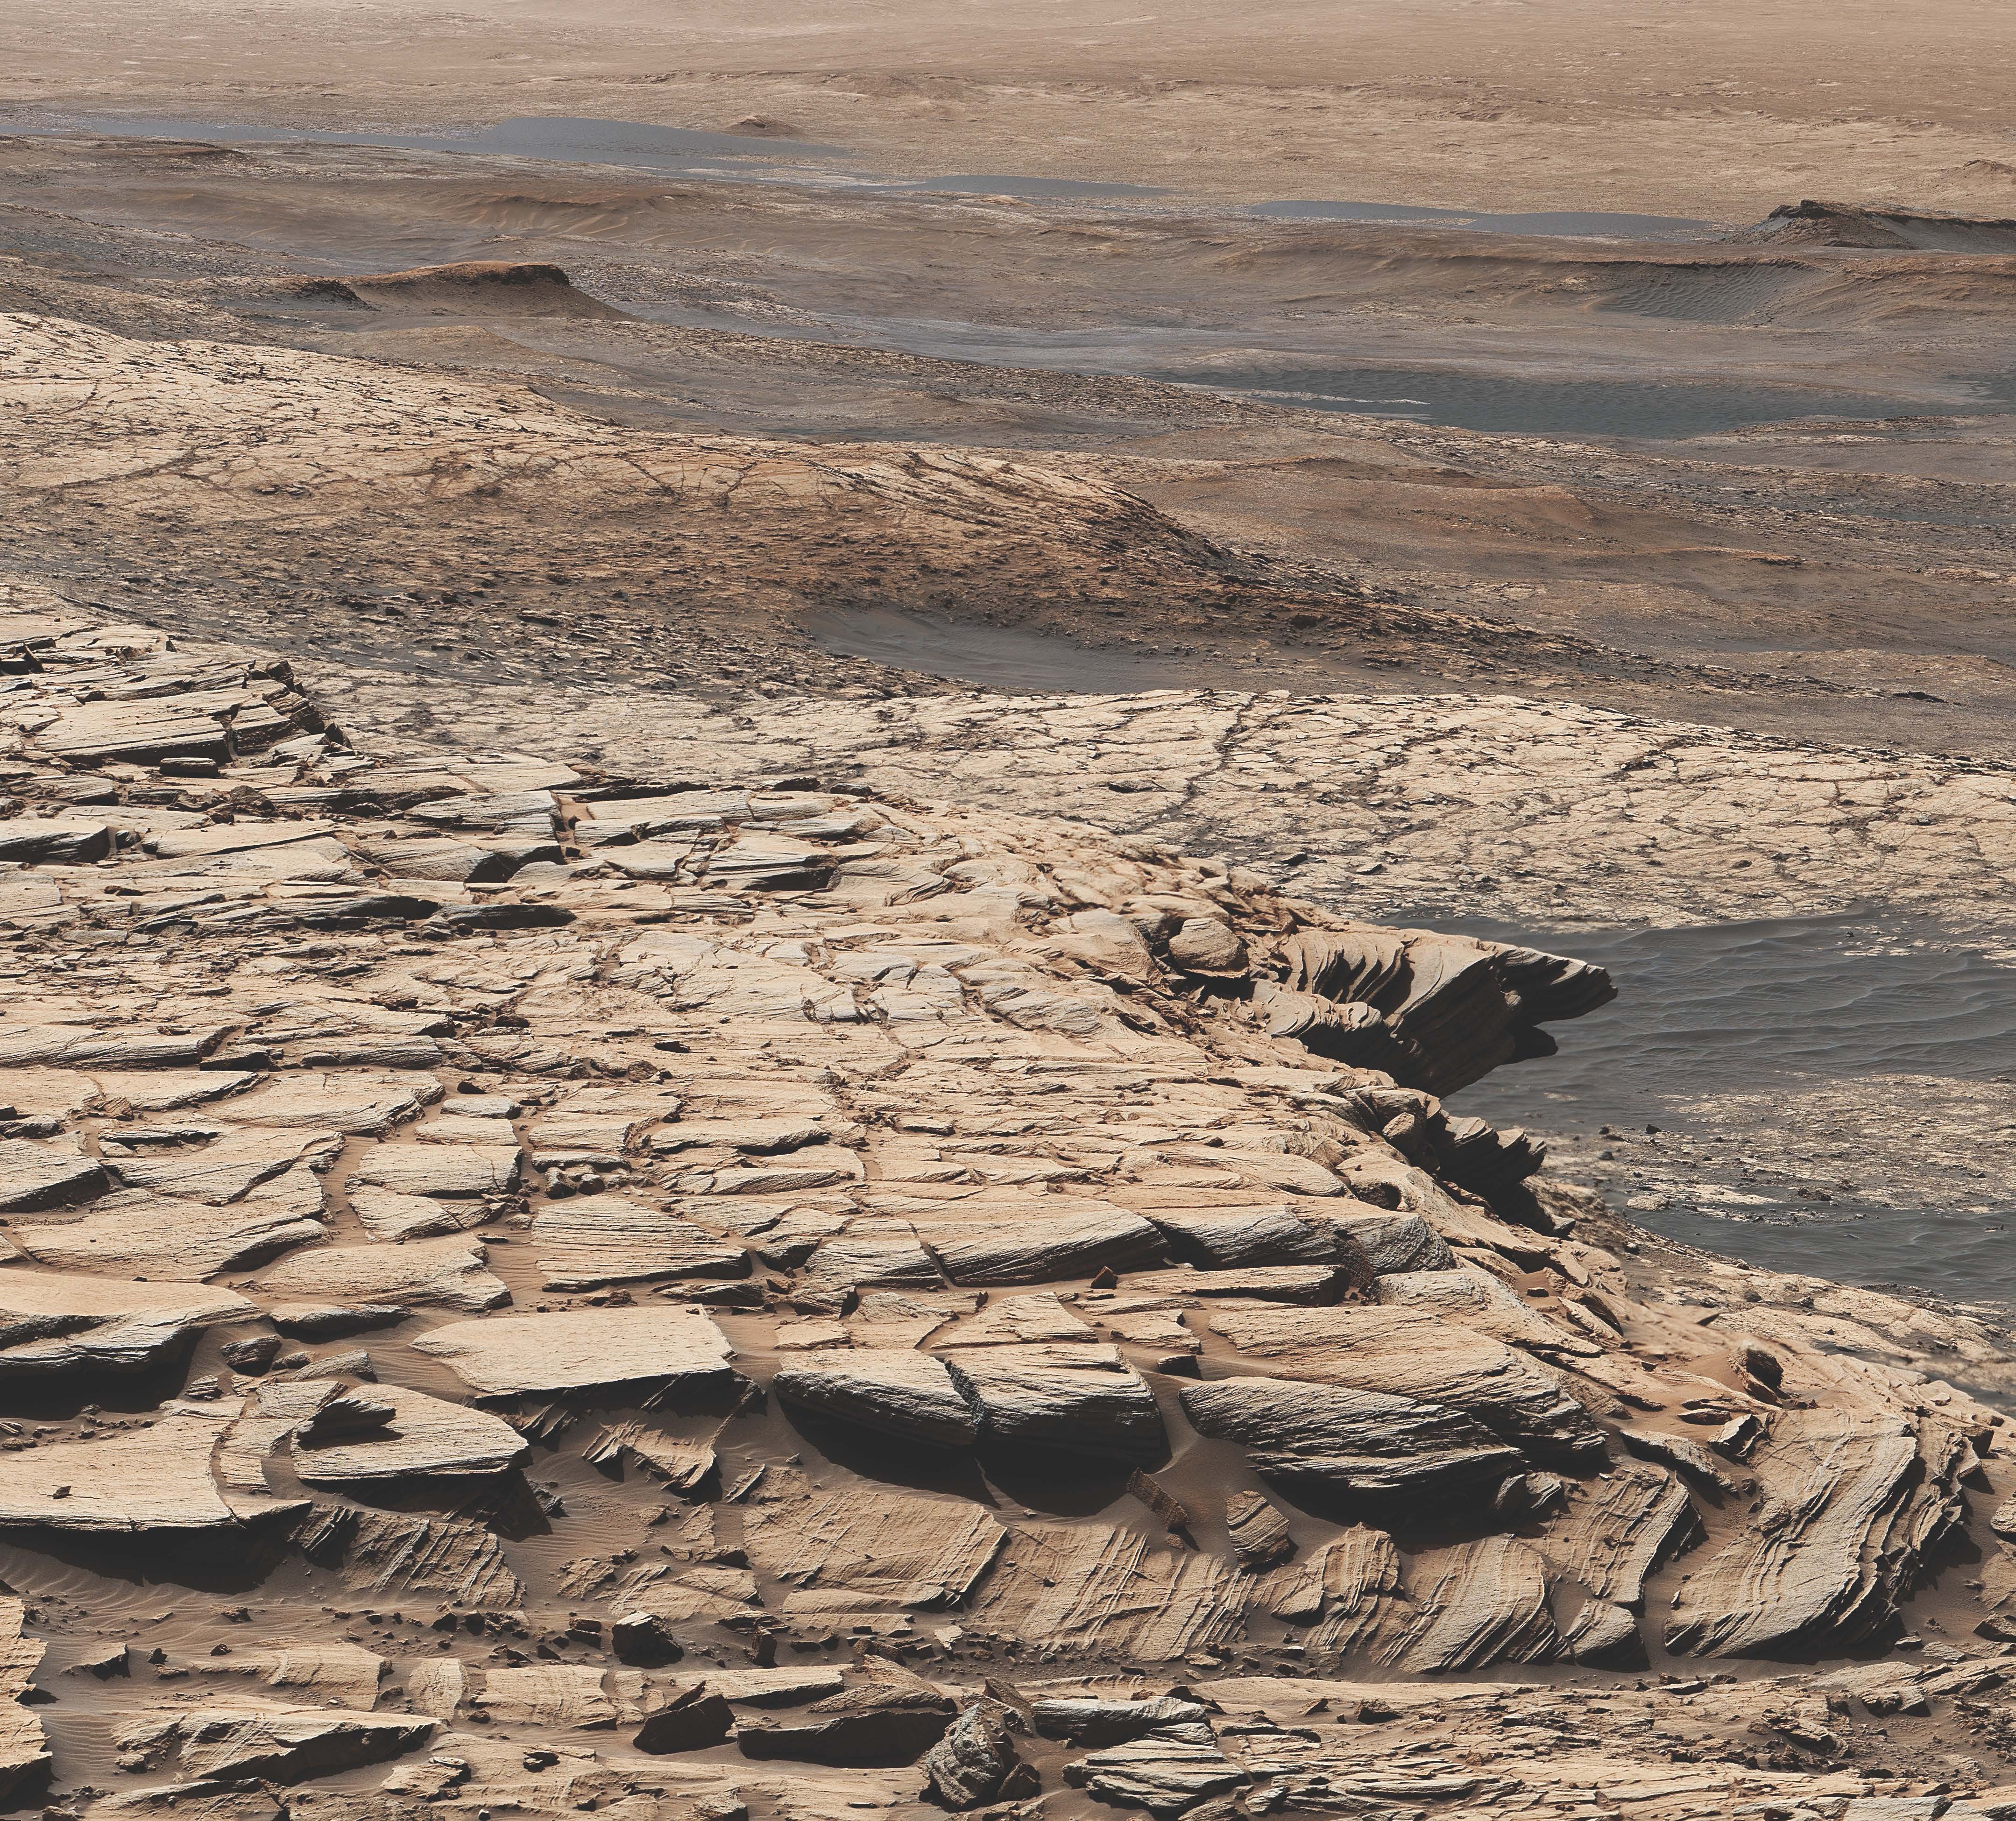 Este mosaico se hizo a partir de imágenes tomadas por la cámara MAST a bordo de la nave espacial Curiosity de la NASA el día de Marte de 2729, o el día del Sol de la misión.  Muestra el paisaje de la formación de arenisca Stimson en el cráter Gale.  En este sitio general, Curiosity perforó el pozo de perforación de Edimburgo, una muestra de la cual se enriqueció con carbono 12.